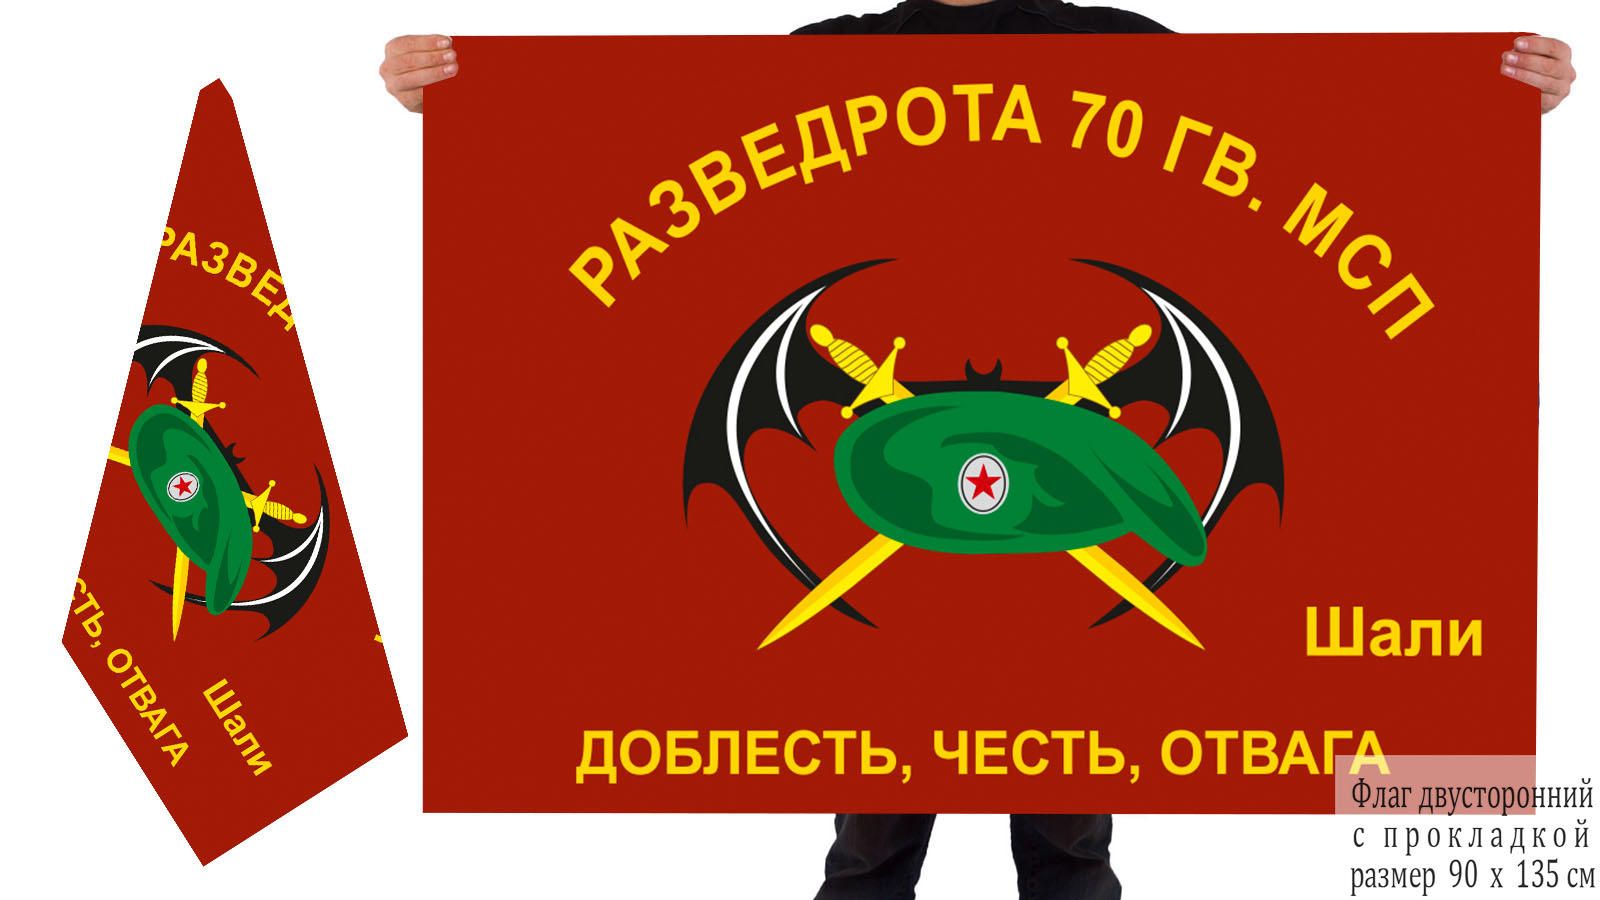 Двусторонний флаг Разведроты 70 Гв. МСП 